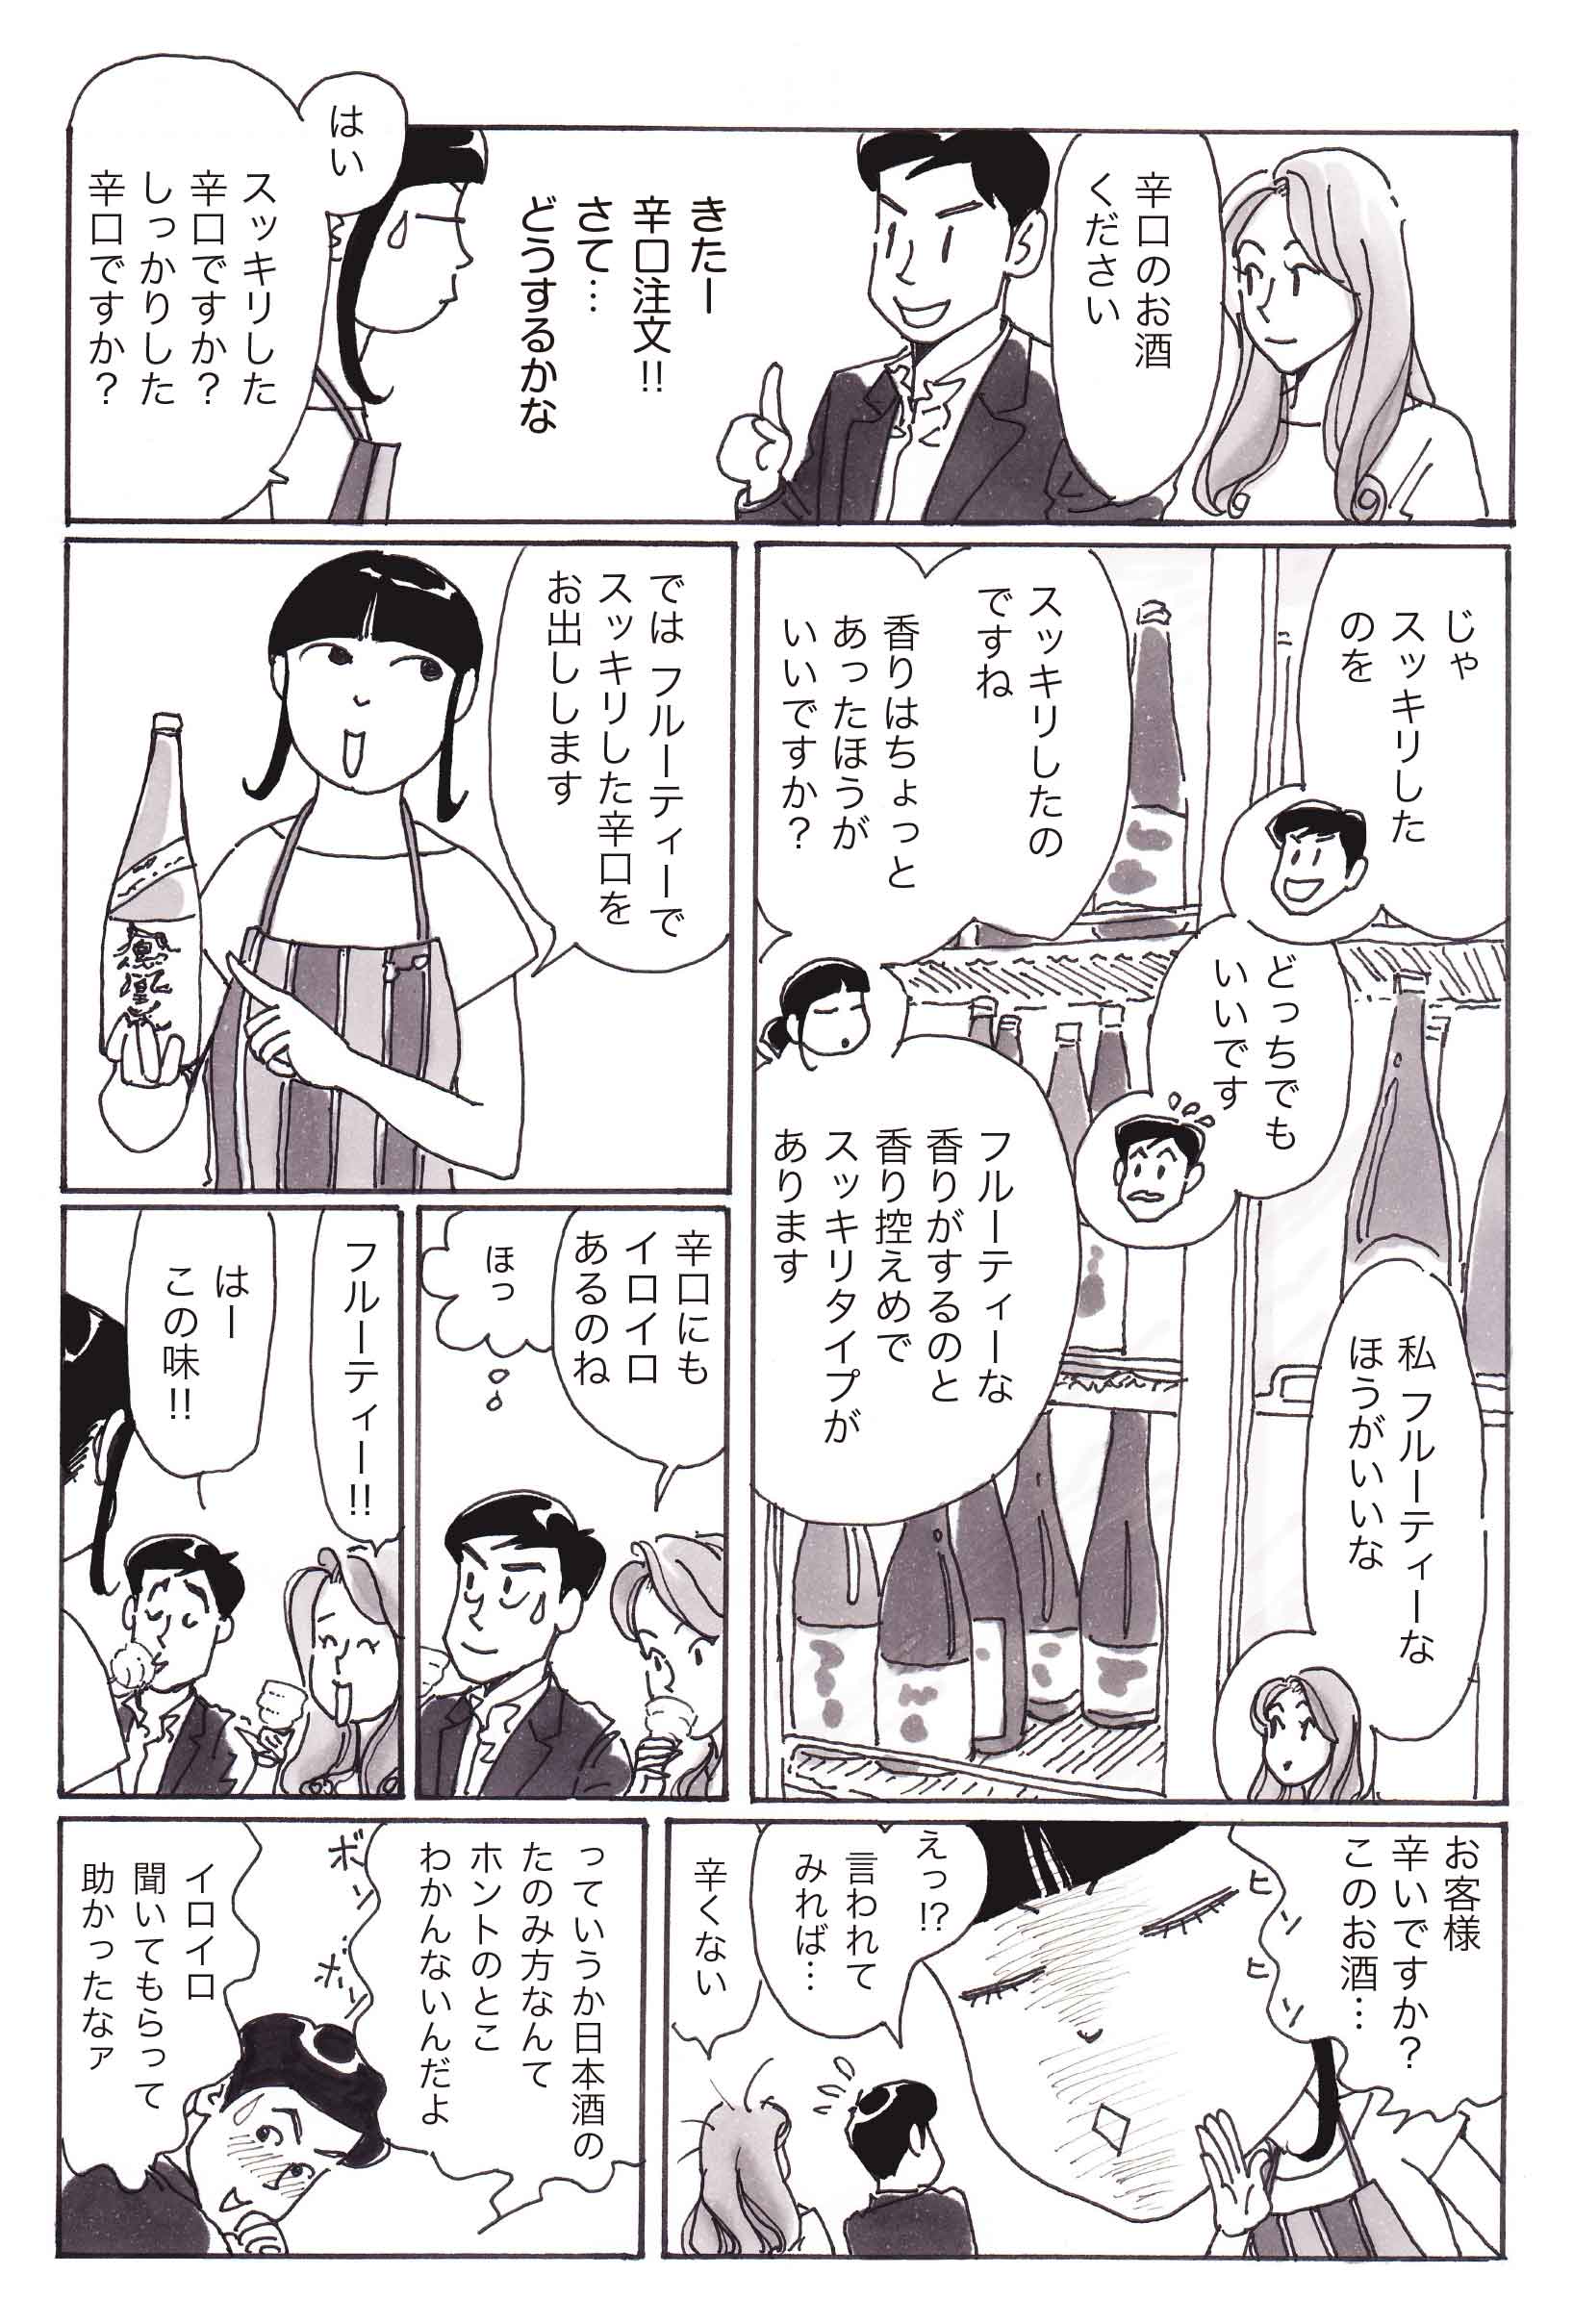 日本酒に恋して 若かりし私と新宿 無料で読める漫画 ４コマサイト パチクリ